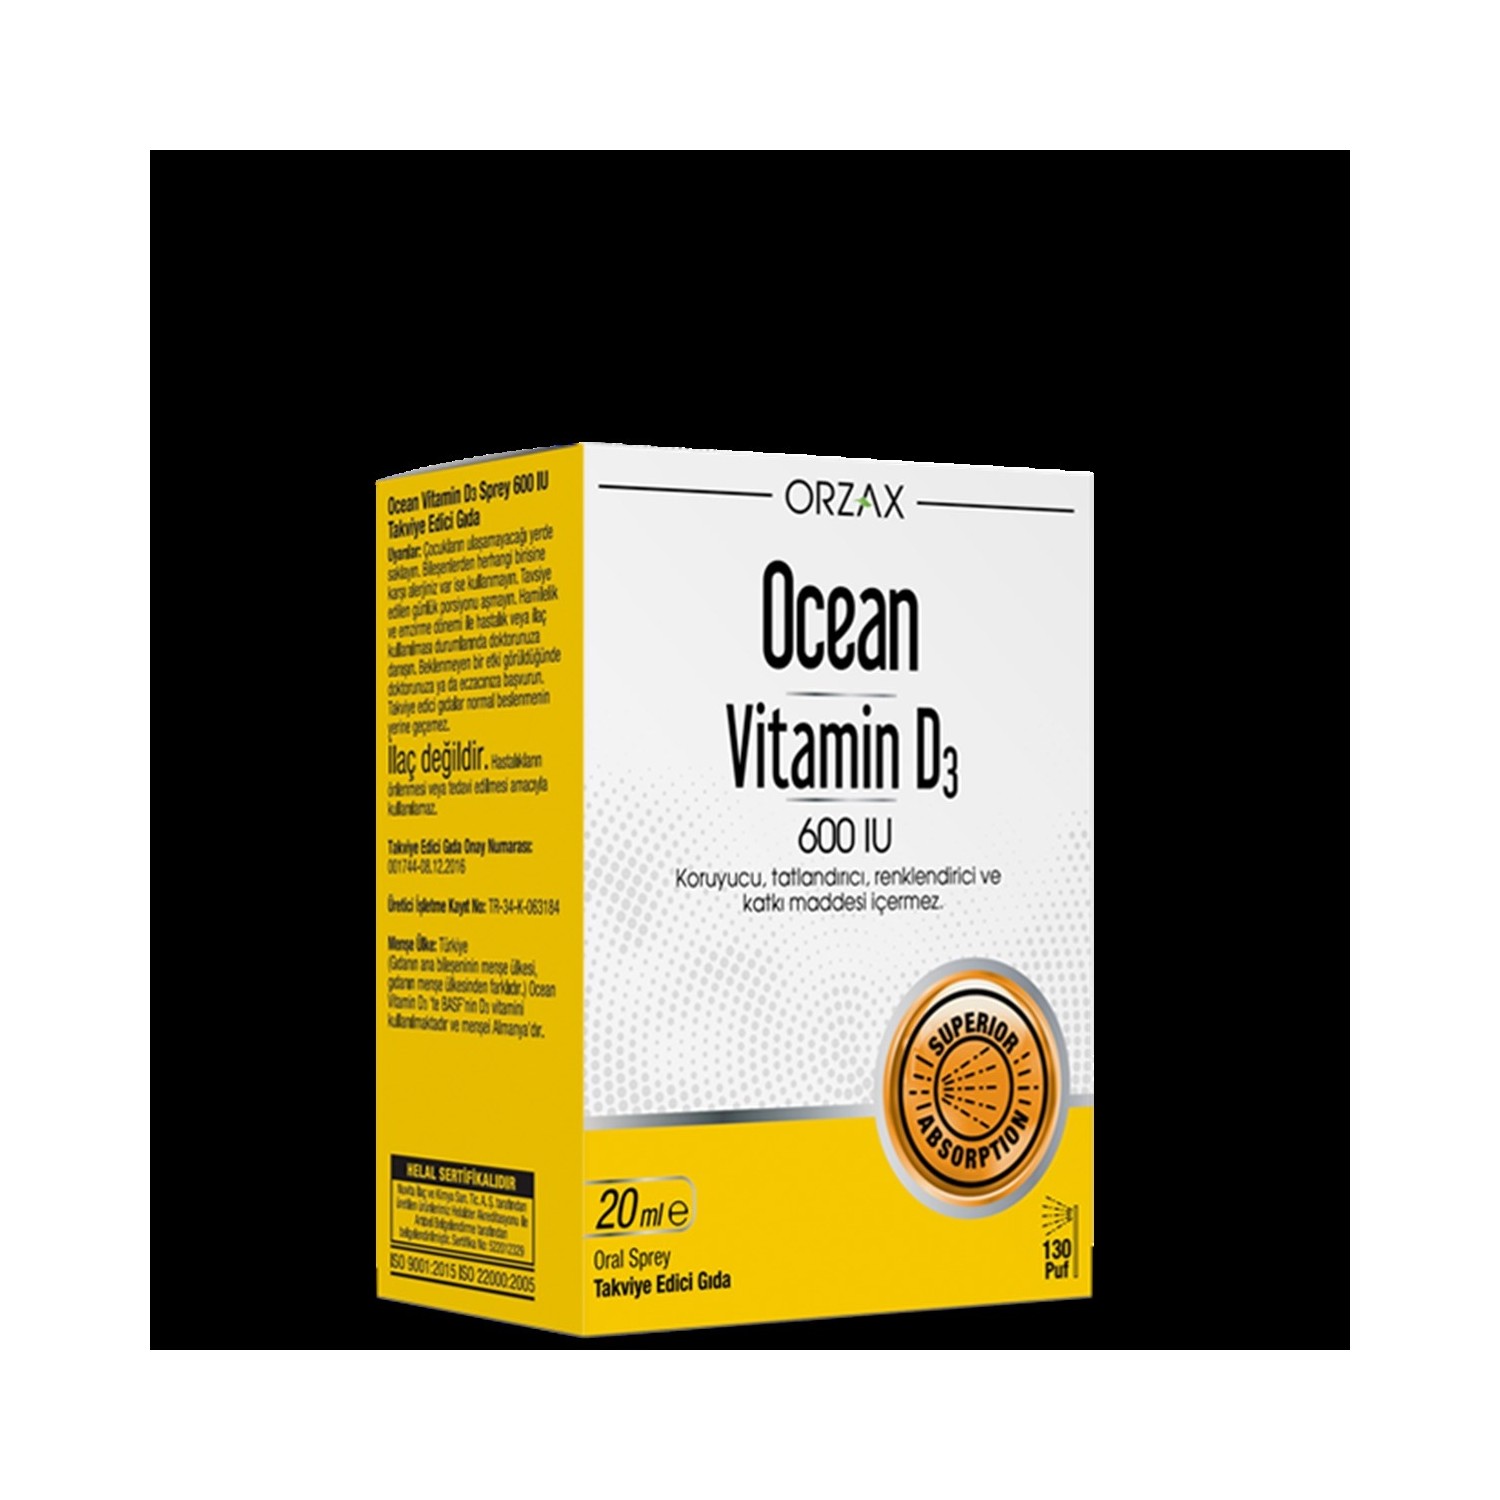 Спрей витамин D3 Ocean 600 МЕ, 20 мл мелатонин спрей с витамином в6 и мятой 60 доз 10 мл